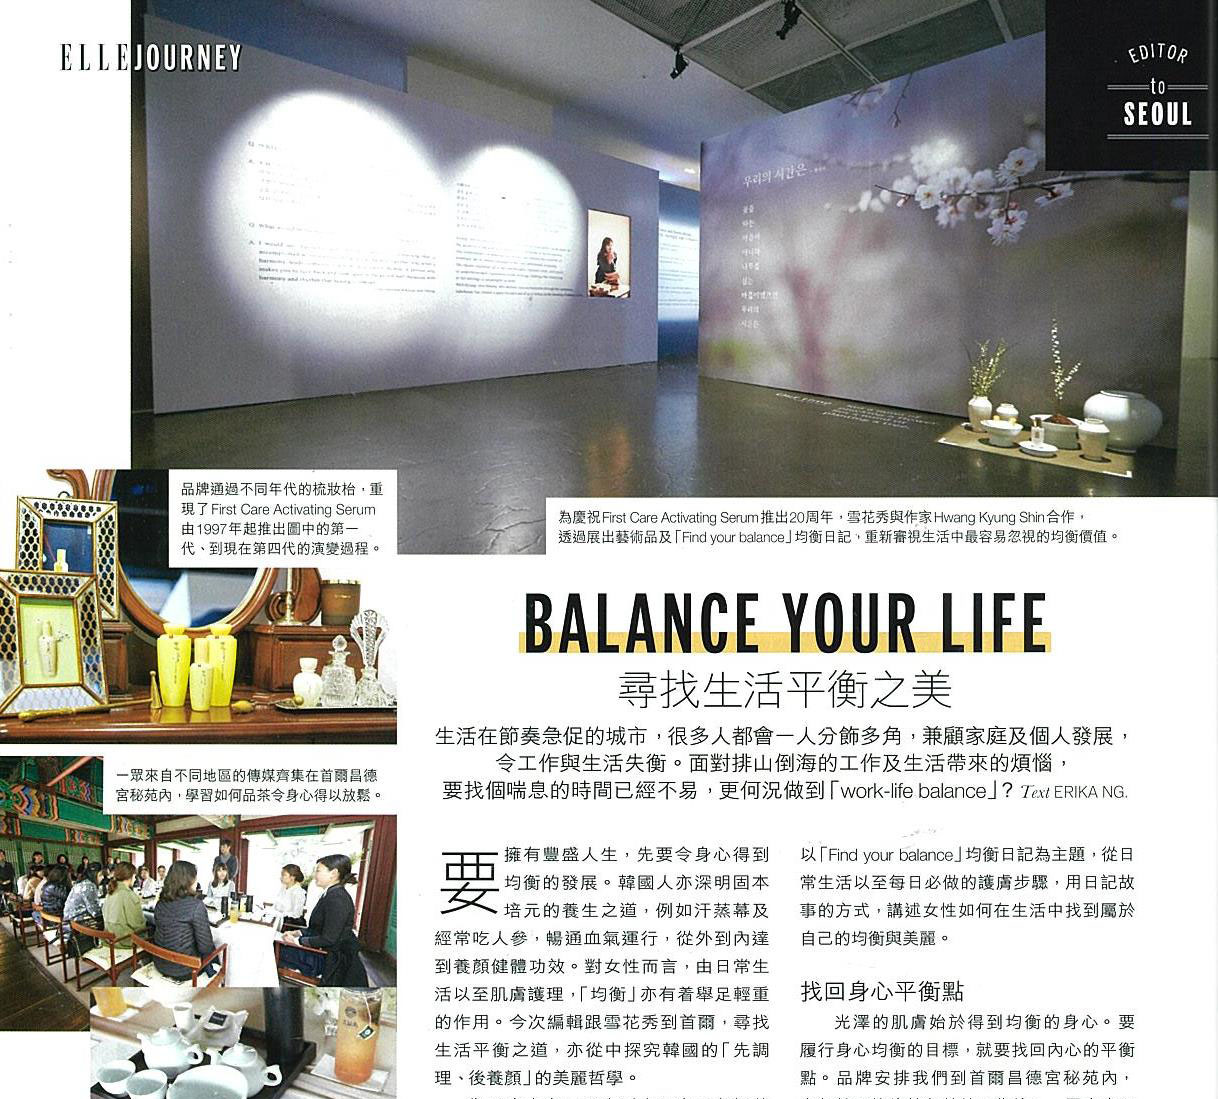 Balance Your Life image